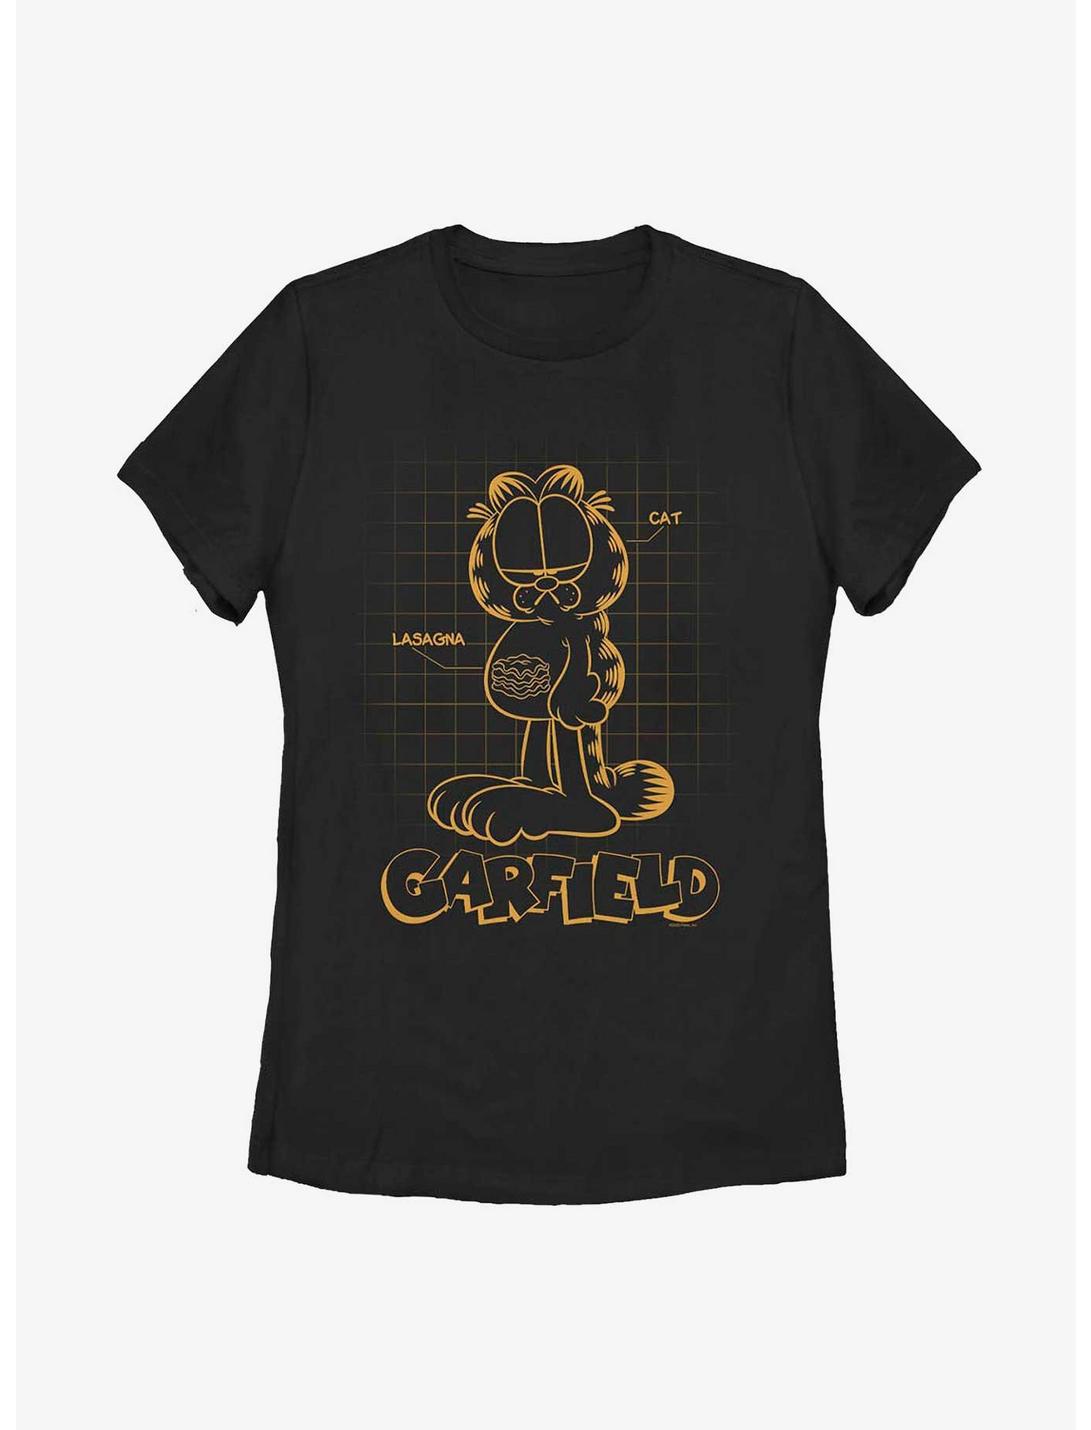 Garfield Cat Schematic Women's T-Shirt, BLACK, hi-res